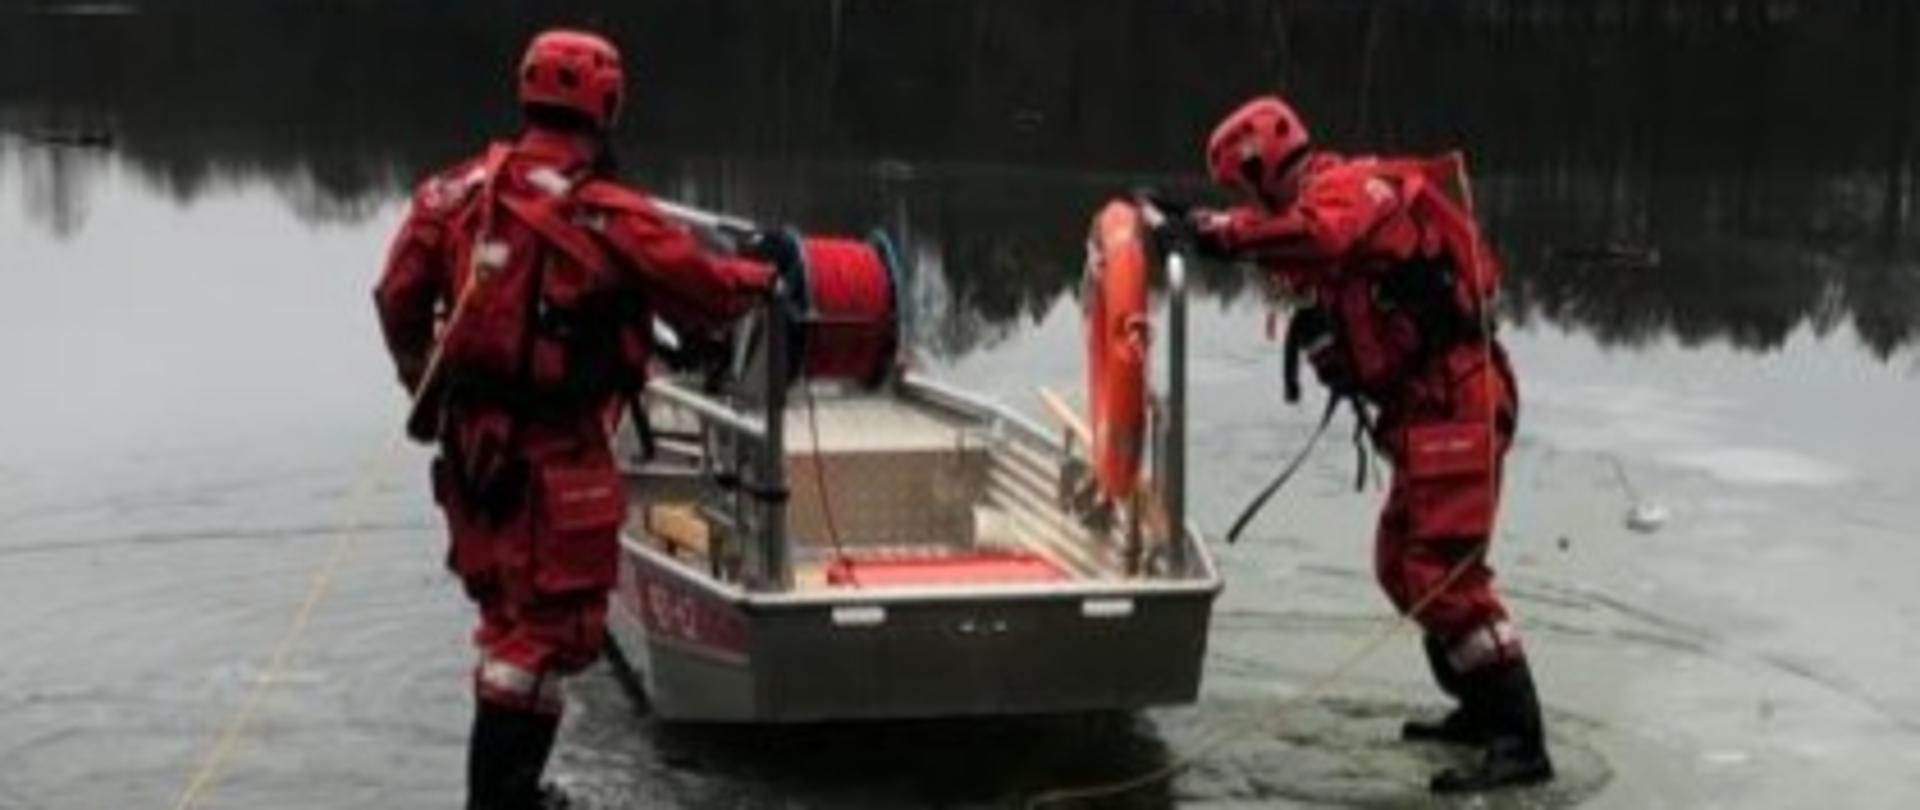 Na tafli zamarzniętego jeziora dwóch strażaków ubranych w specjalne suche skafandry do ratownictwa wodnego porusza się z aluminiową łodzią płaskodenną, która jest specjalnie wyposażona do przeprowadzania akcji na wodzie jak i na lodzie.